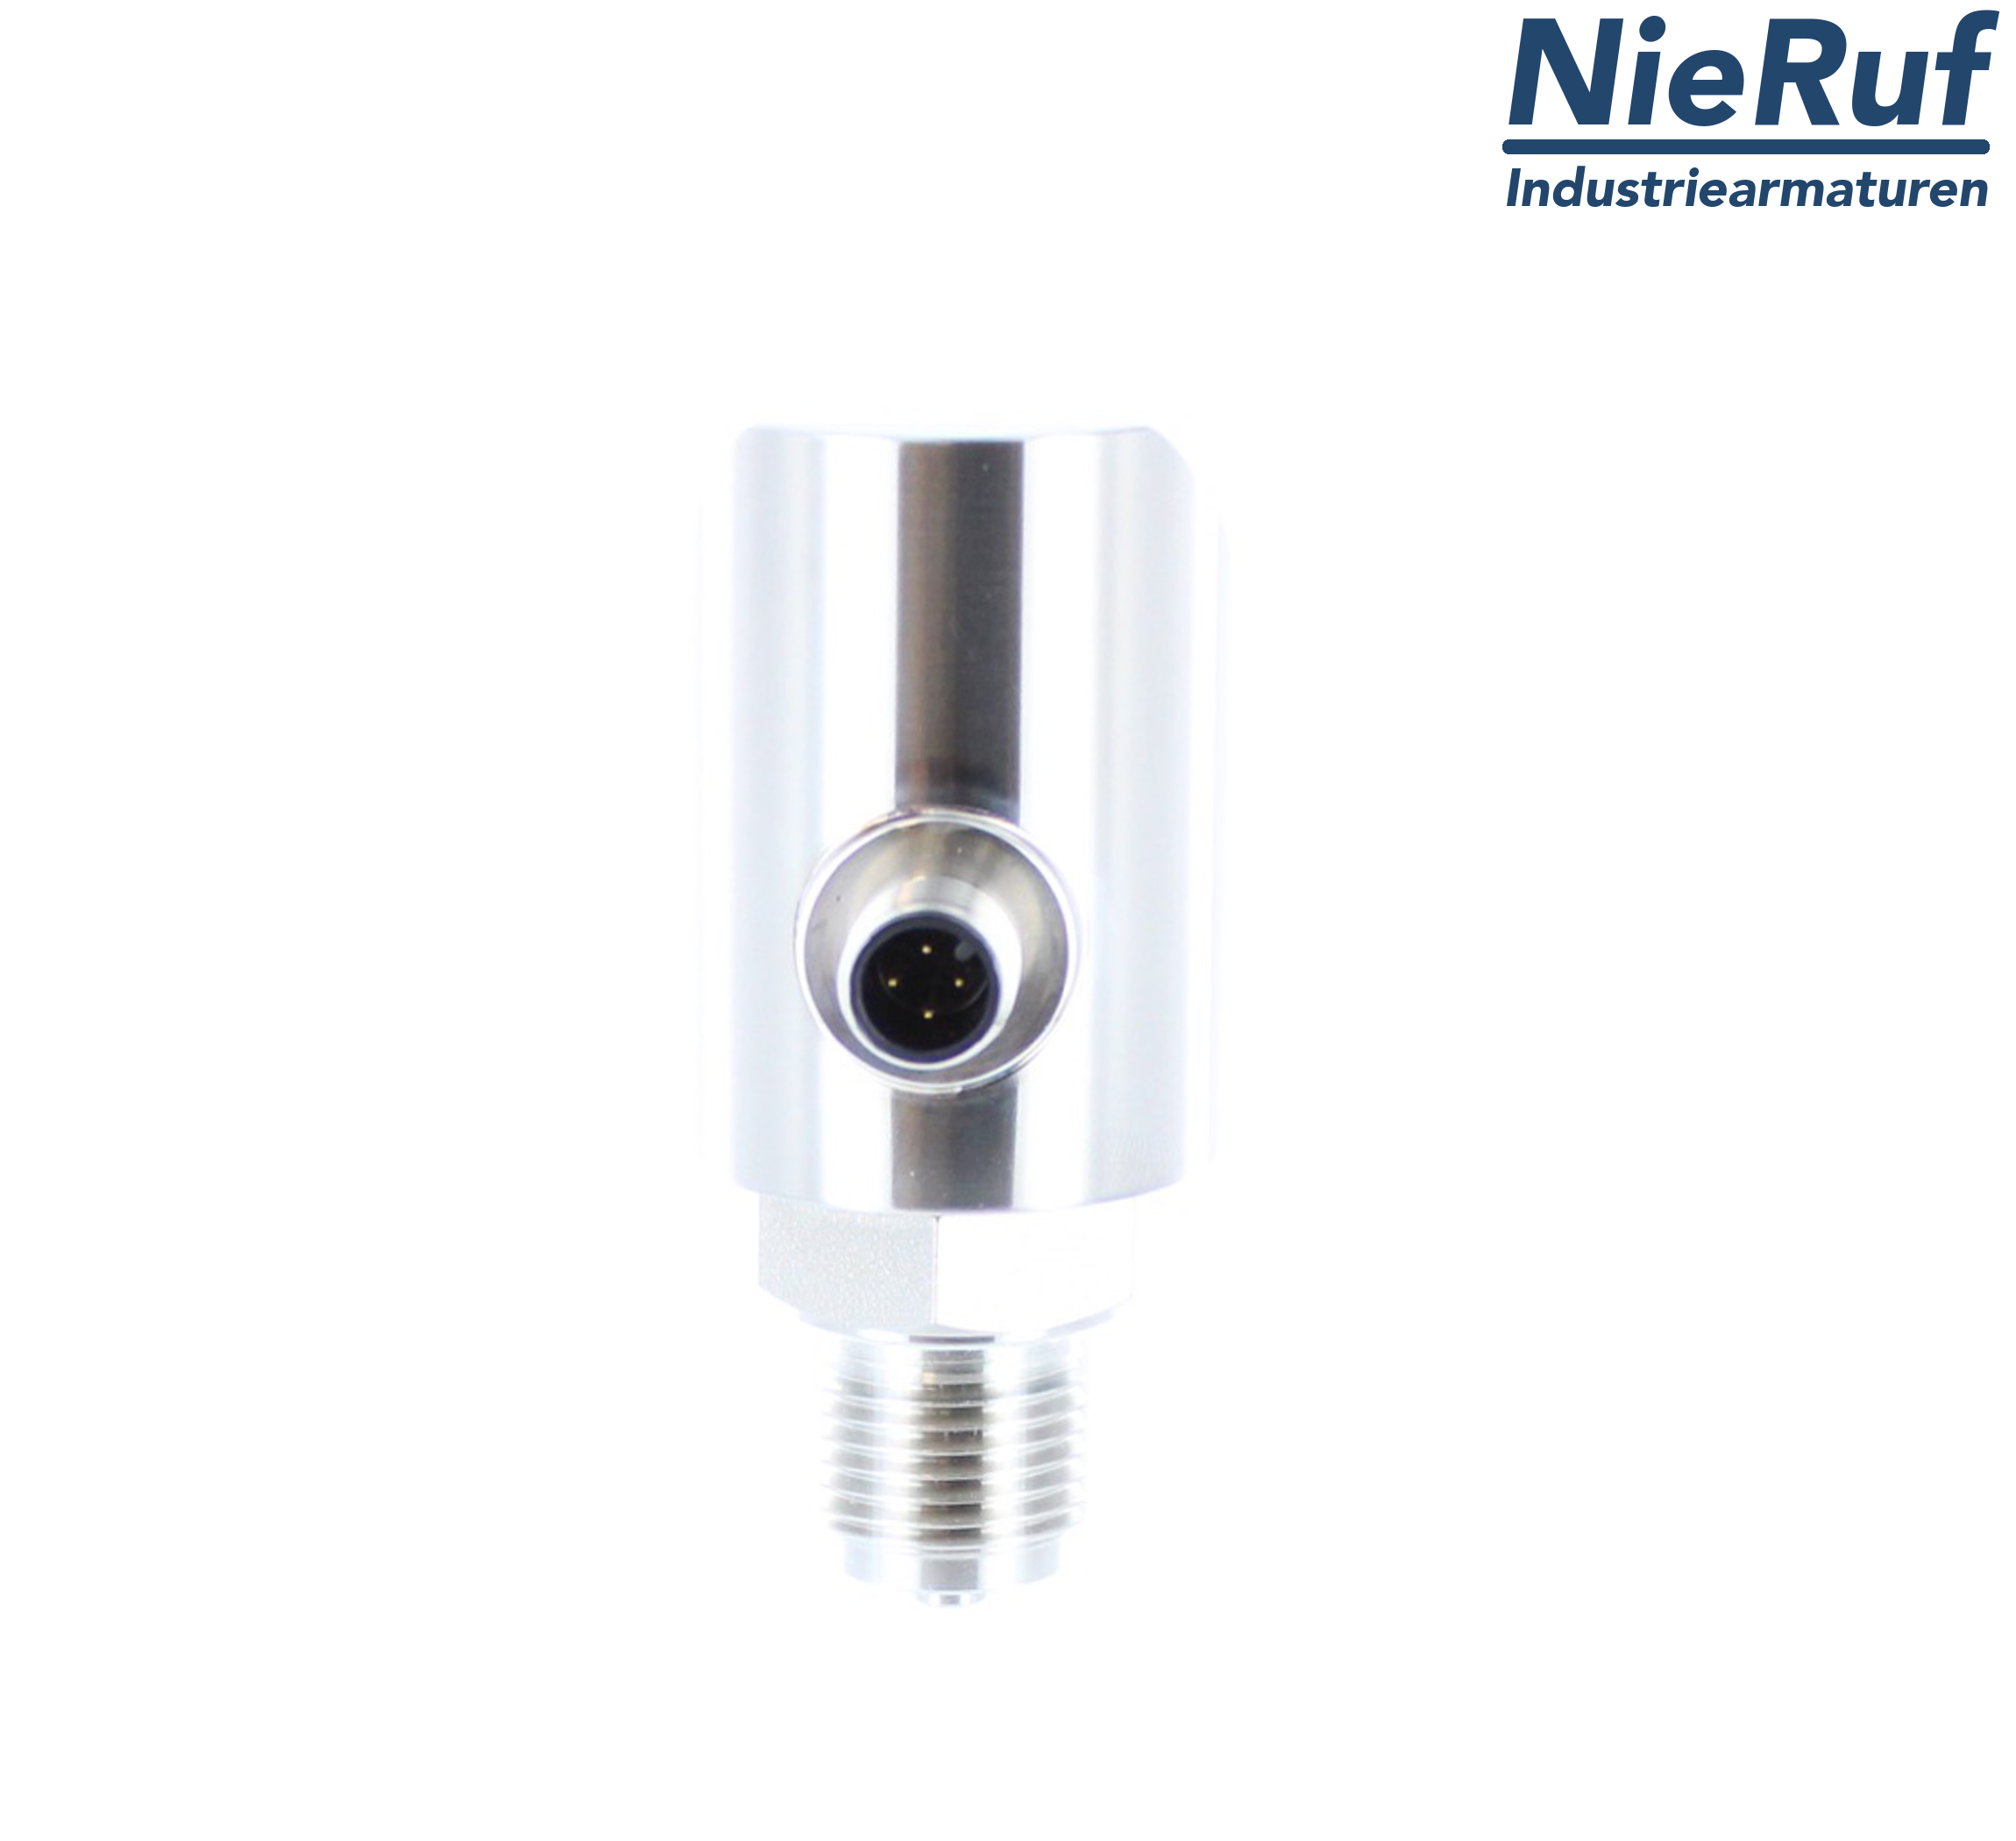 digital pressure sensor G 1/2" B IB 4-wire: 1xPNP, 1x4 - 20mA, Desina FPM 0,0 - 4,0 bar